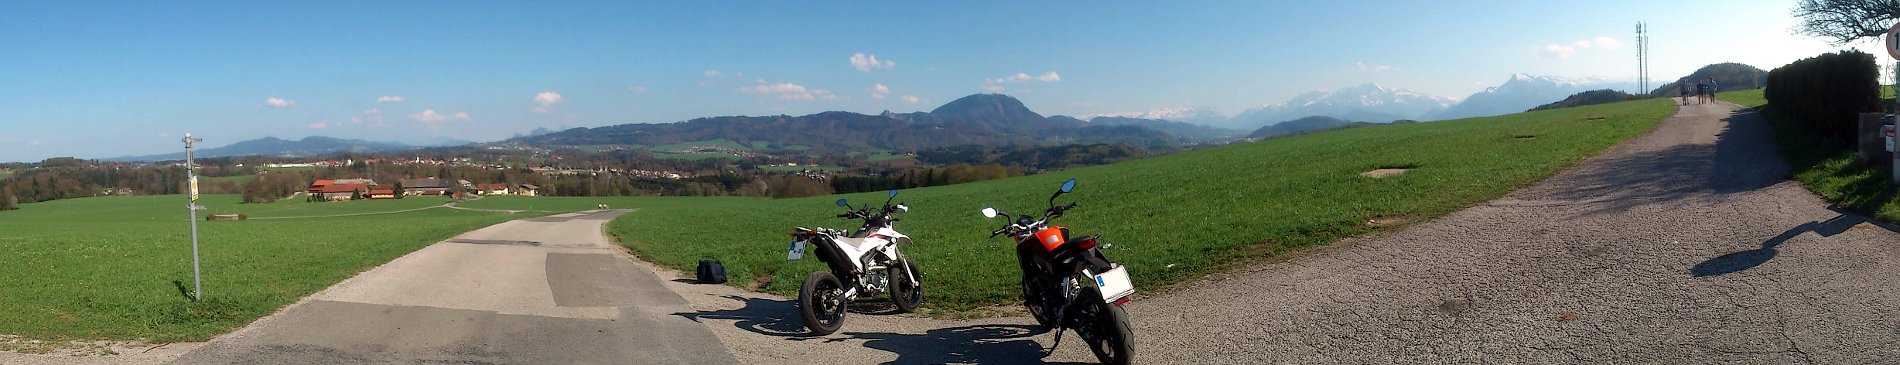 Nähe Salzburg, KTM Duke 125 und Yamaha WR250R